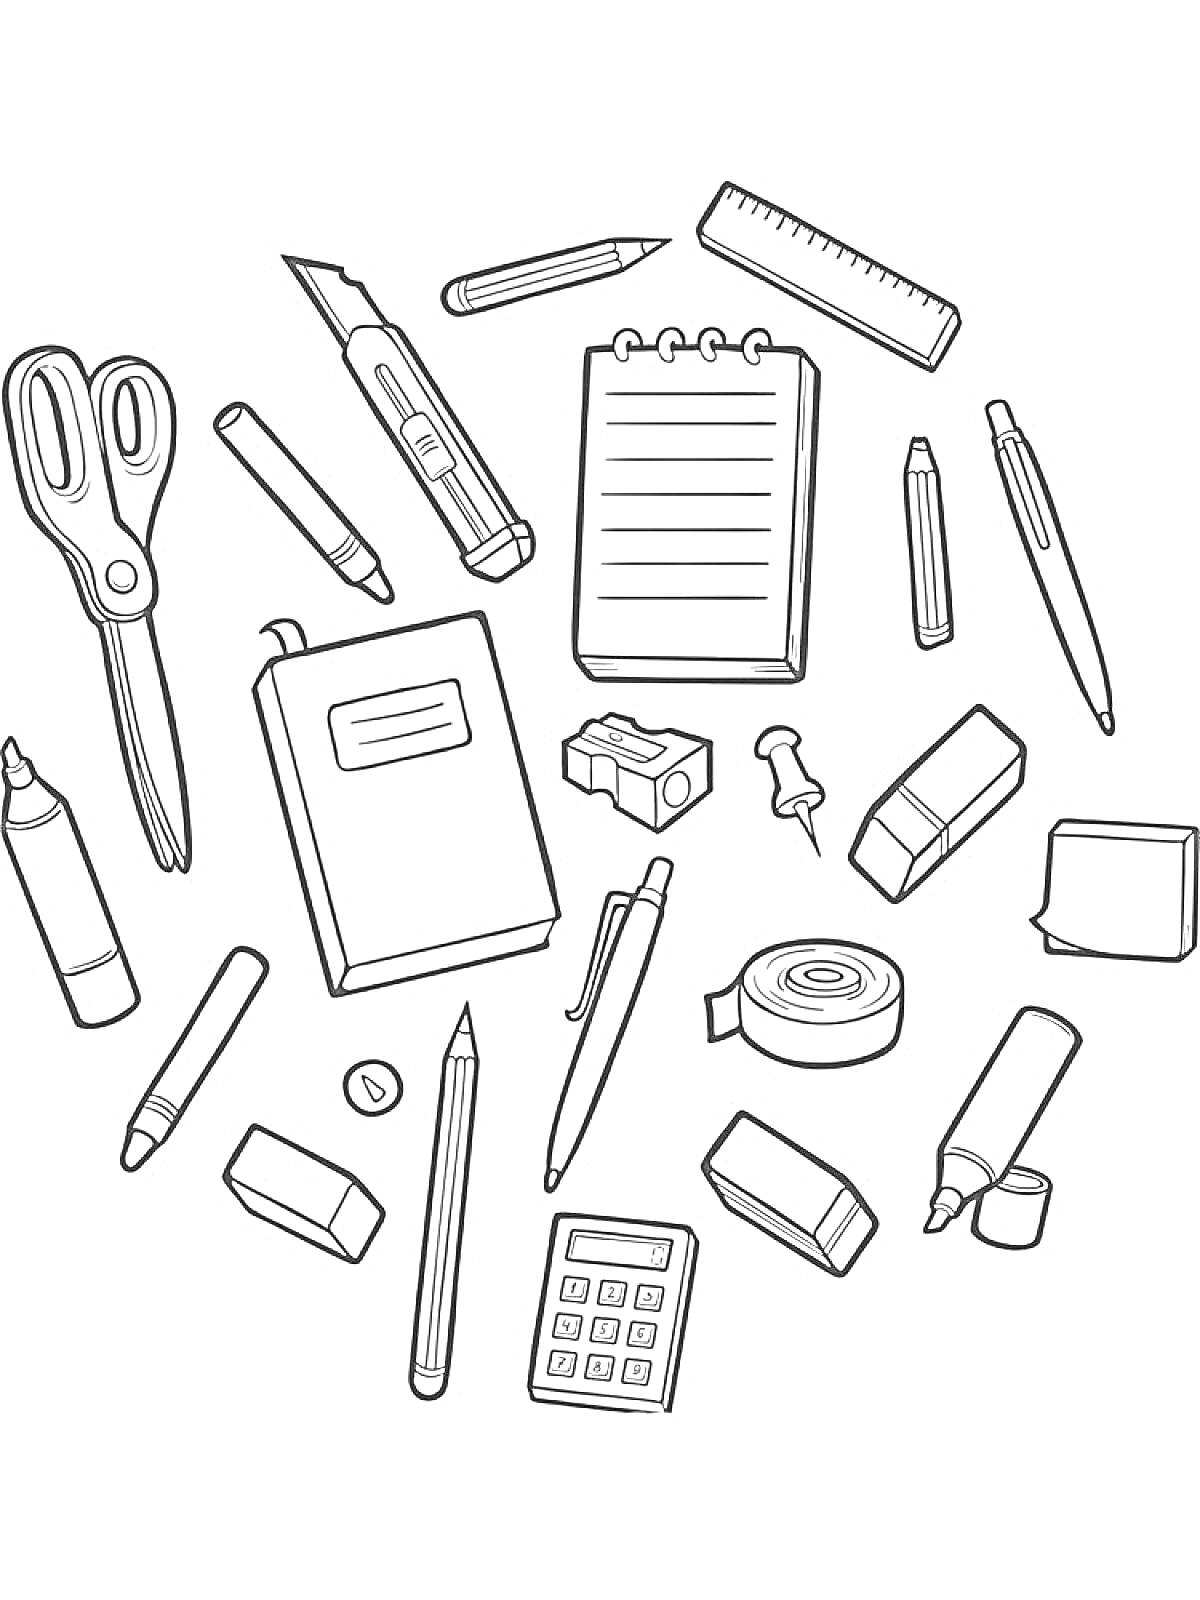 Канцелярские принадлежности: ножницы, канцелярский нож, линейка, блокнот, ручка, карандаш, ластик, резинка для стирания, скрепка, фломастер, калькулятор, клей, точилка, скобы, карандаш механический, клей-карандаш, кнопка, скотч